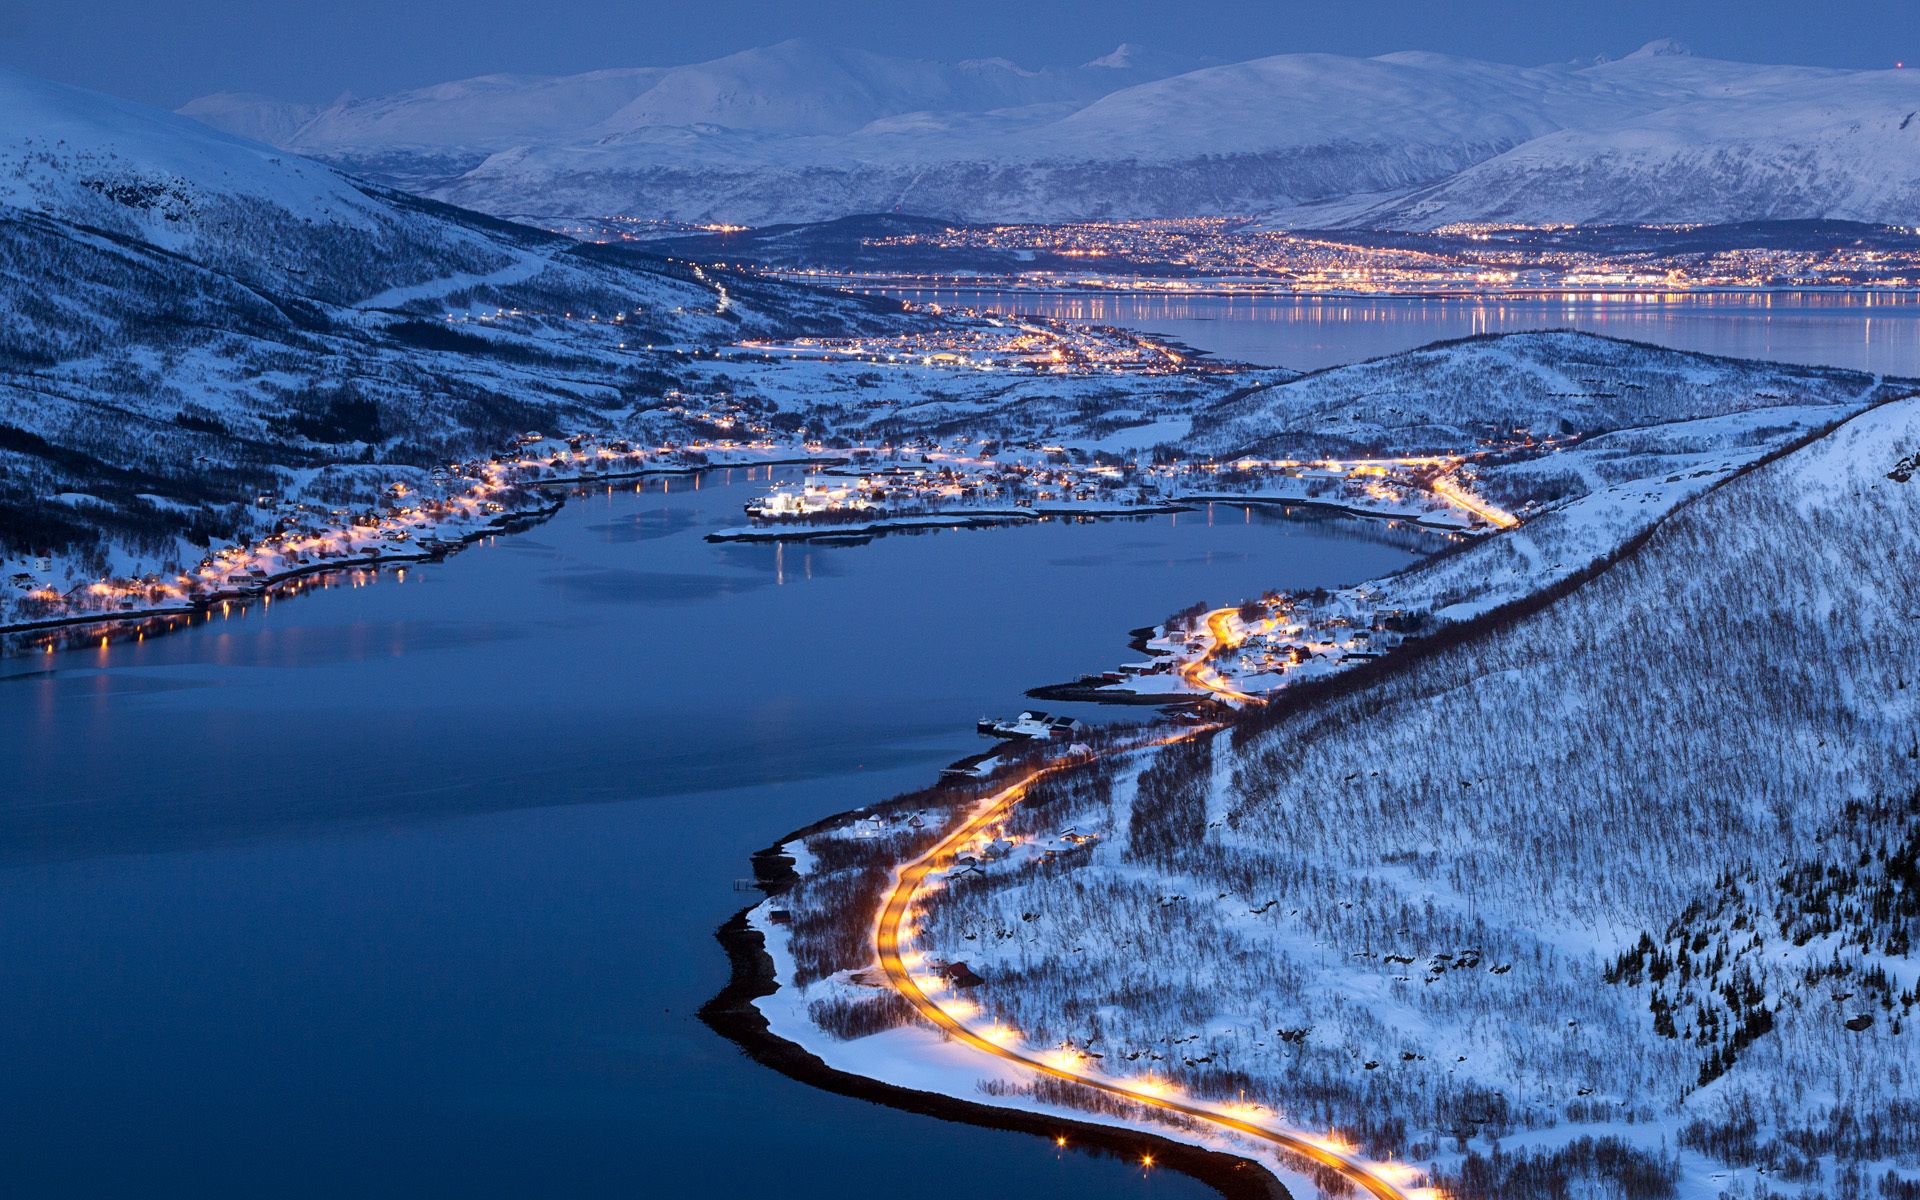 Troms Norway City Tromso With Image